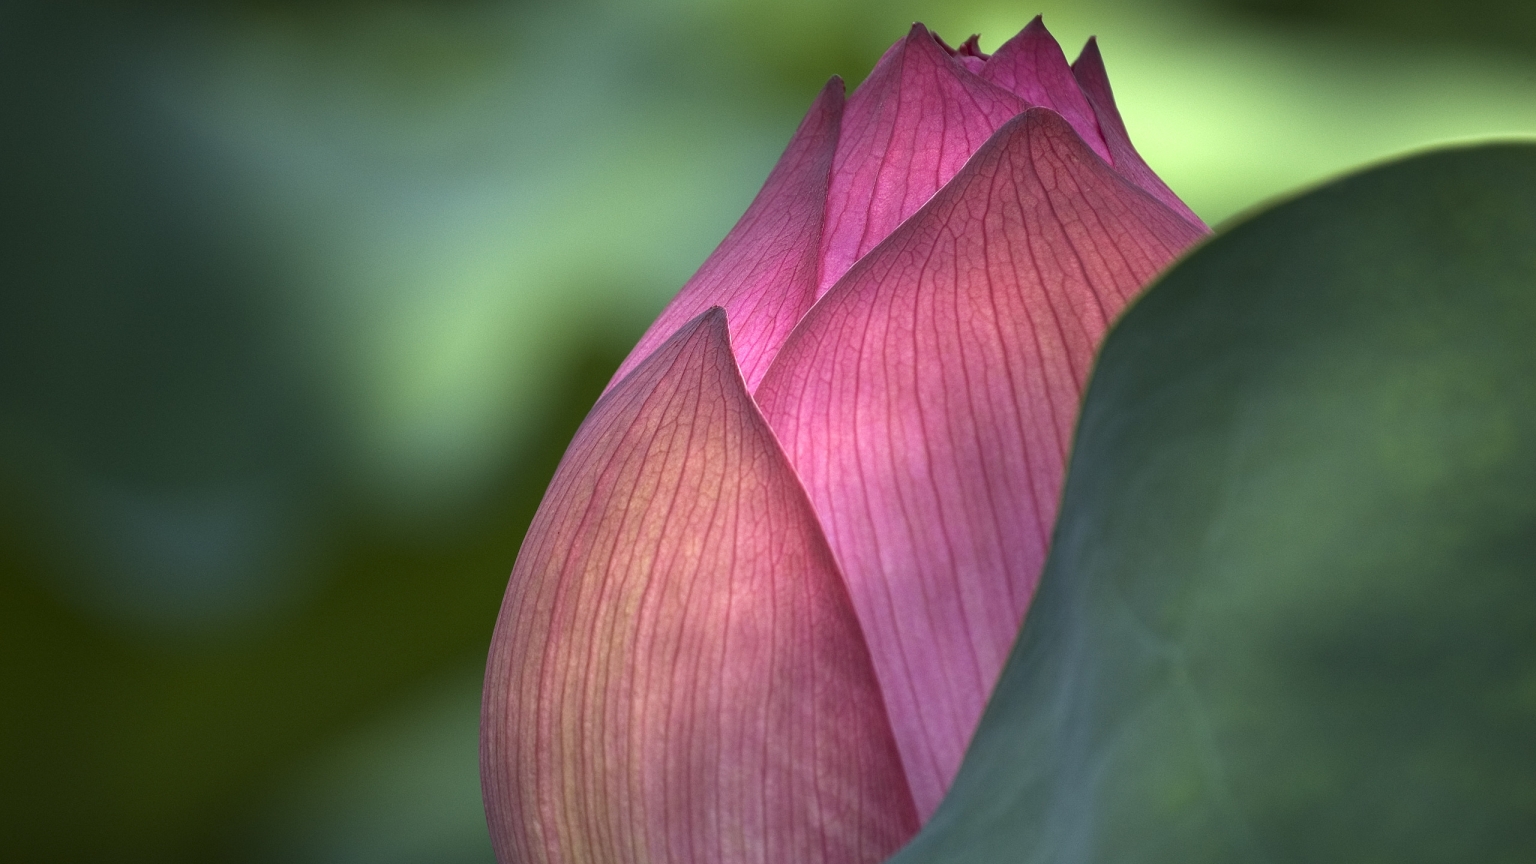 Lotus Flower for 1536 x 864 HDTV resolution